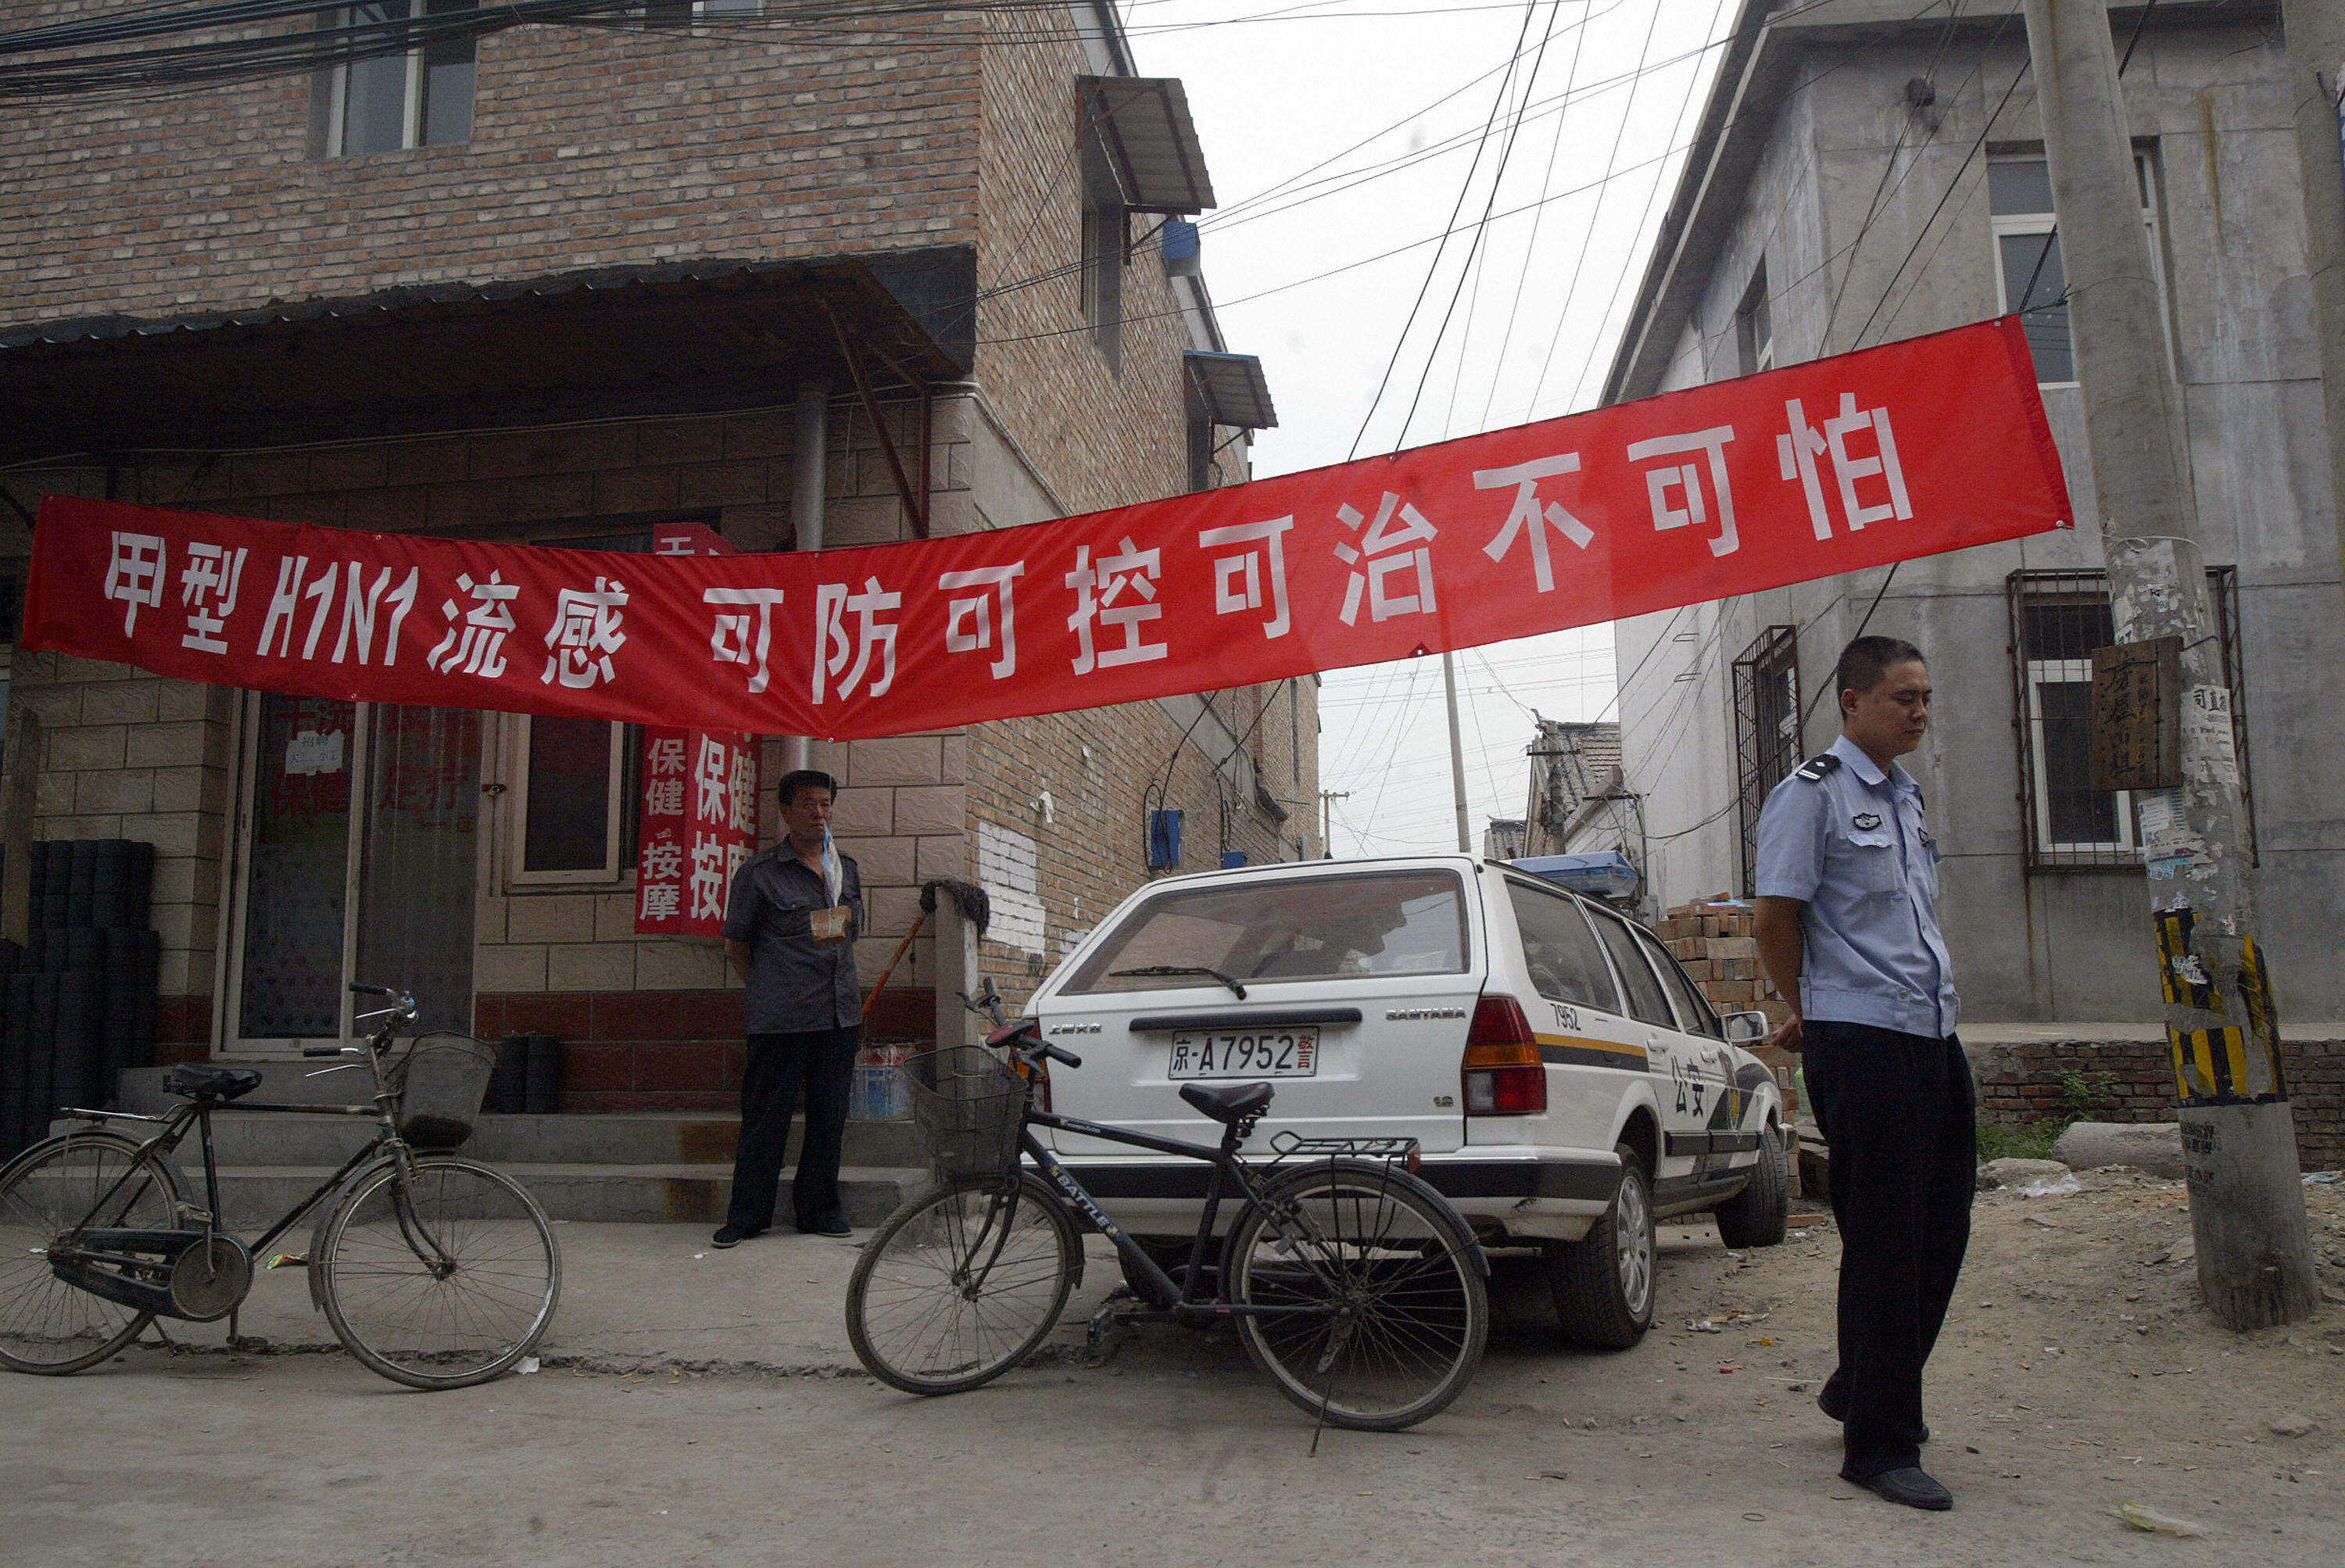 悬挂在北京郊区的一个宣传横幅写着「甲型H1N1流感 可防可控可治不可怕」。